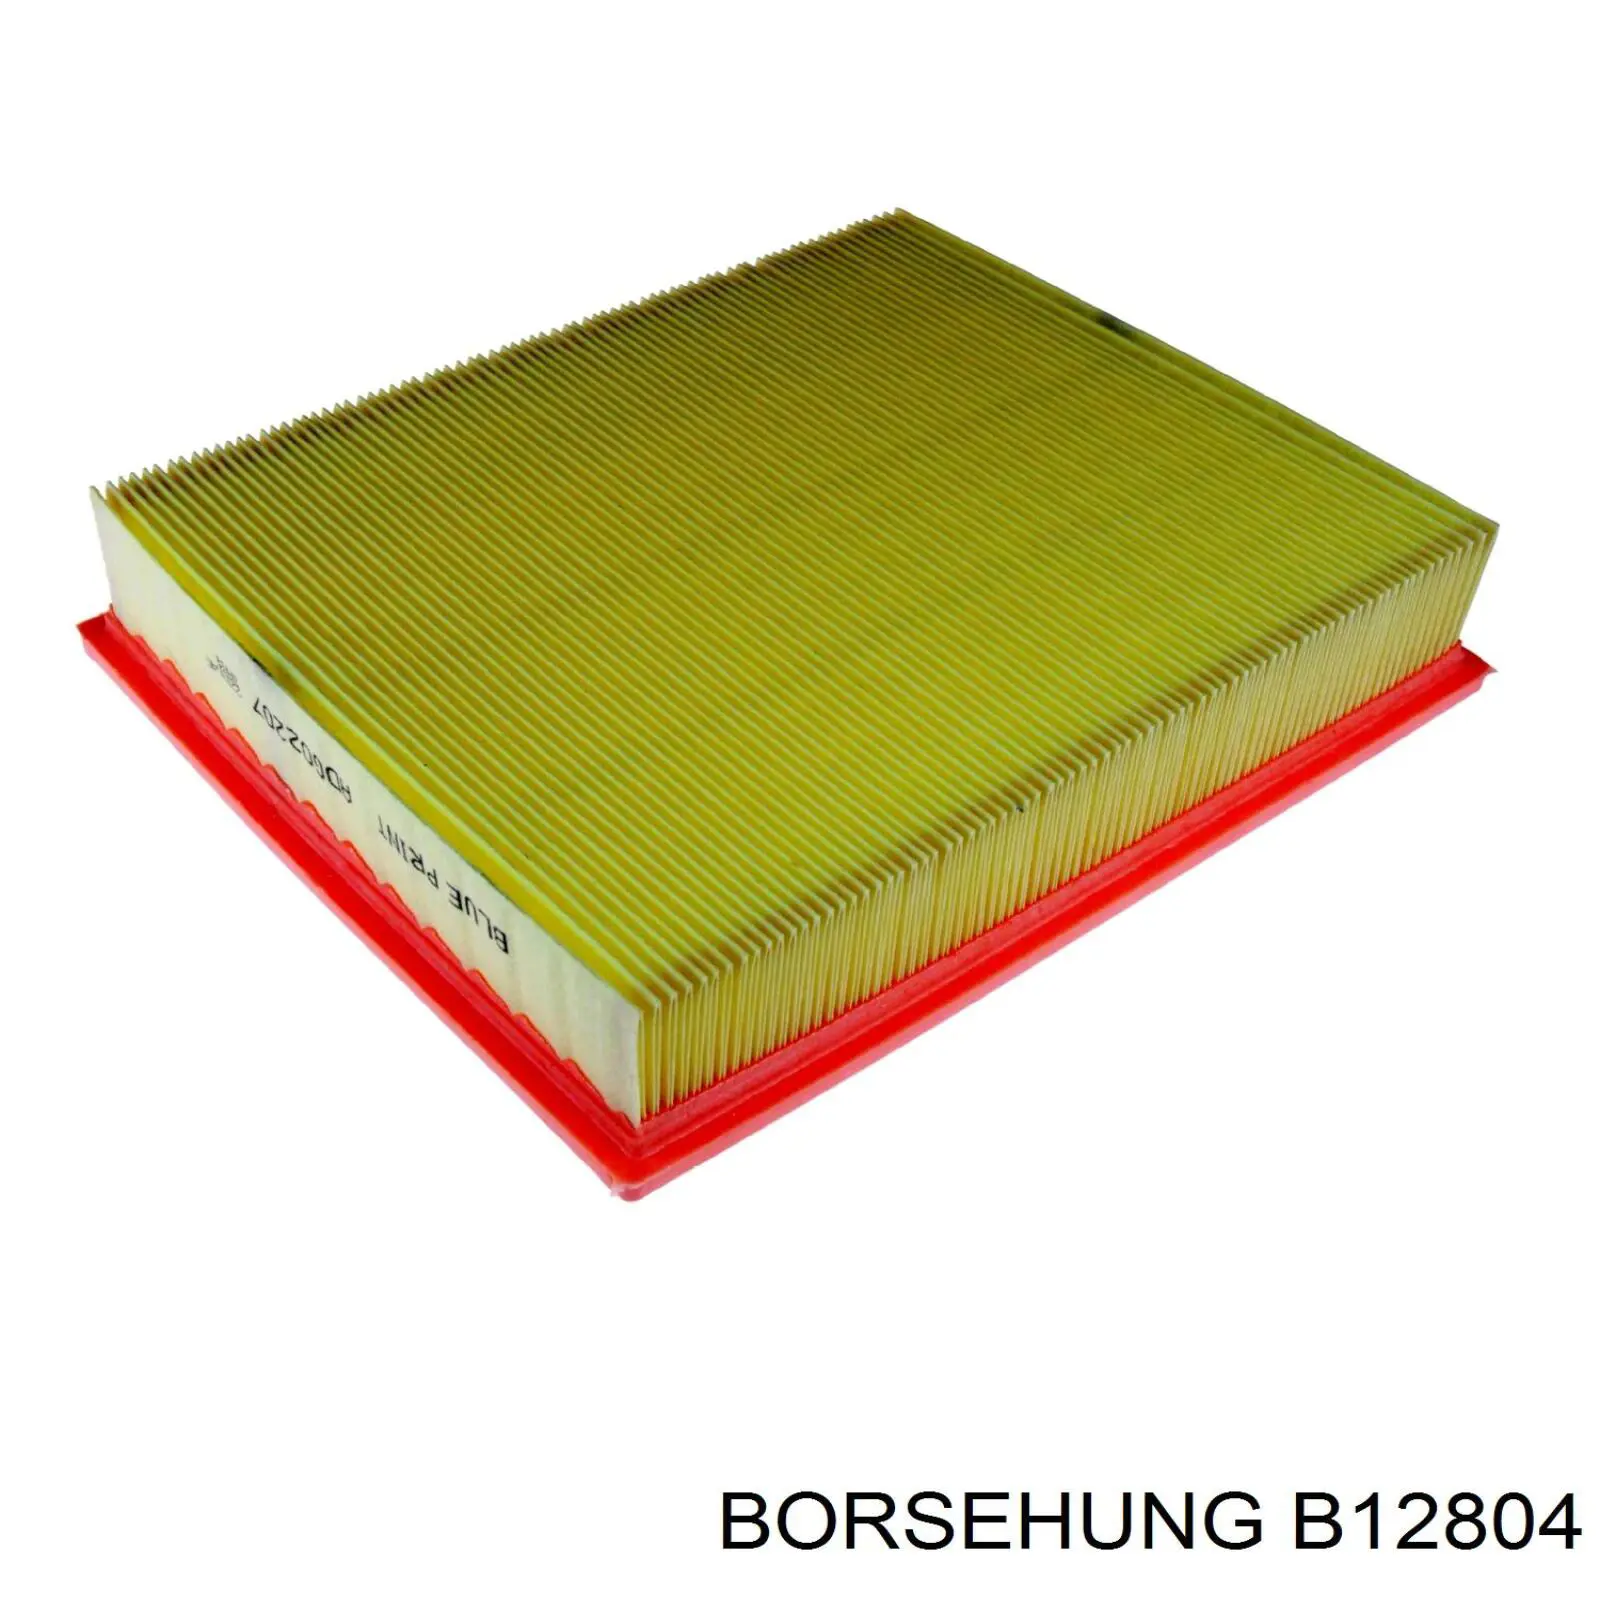 B12804 Borsehung filtro de aire